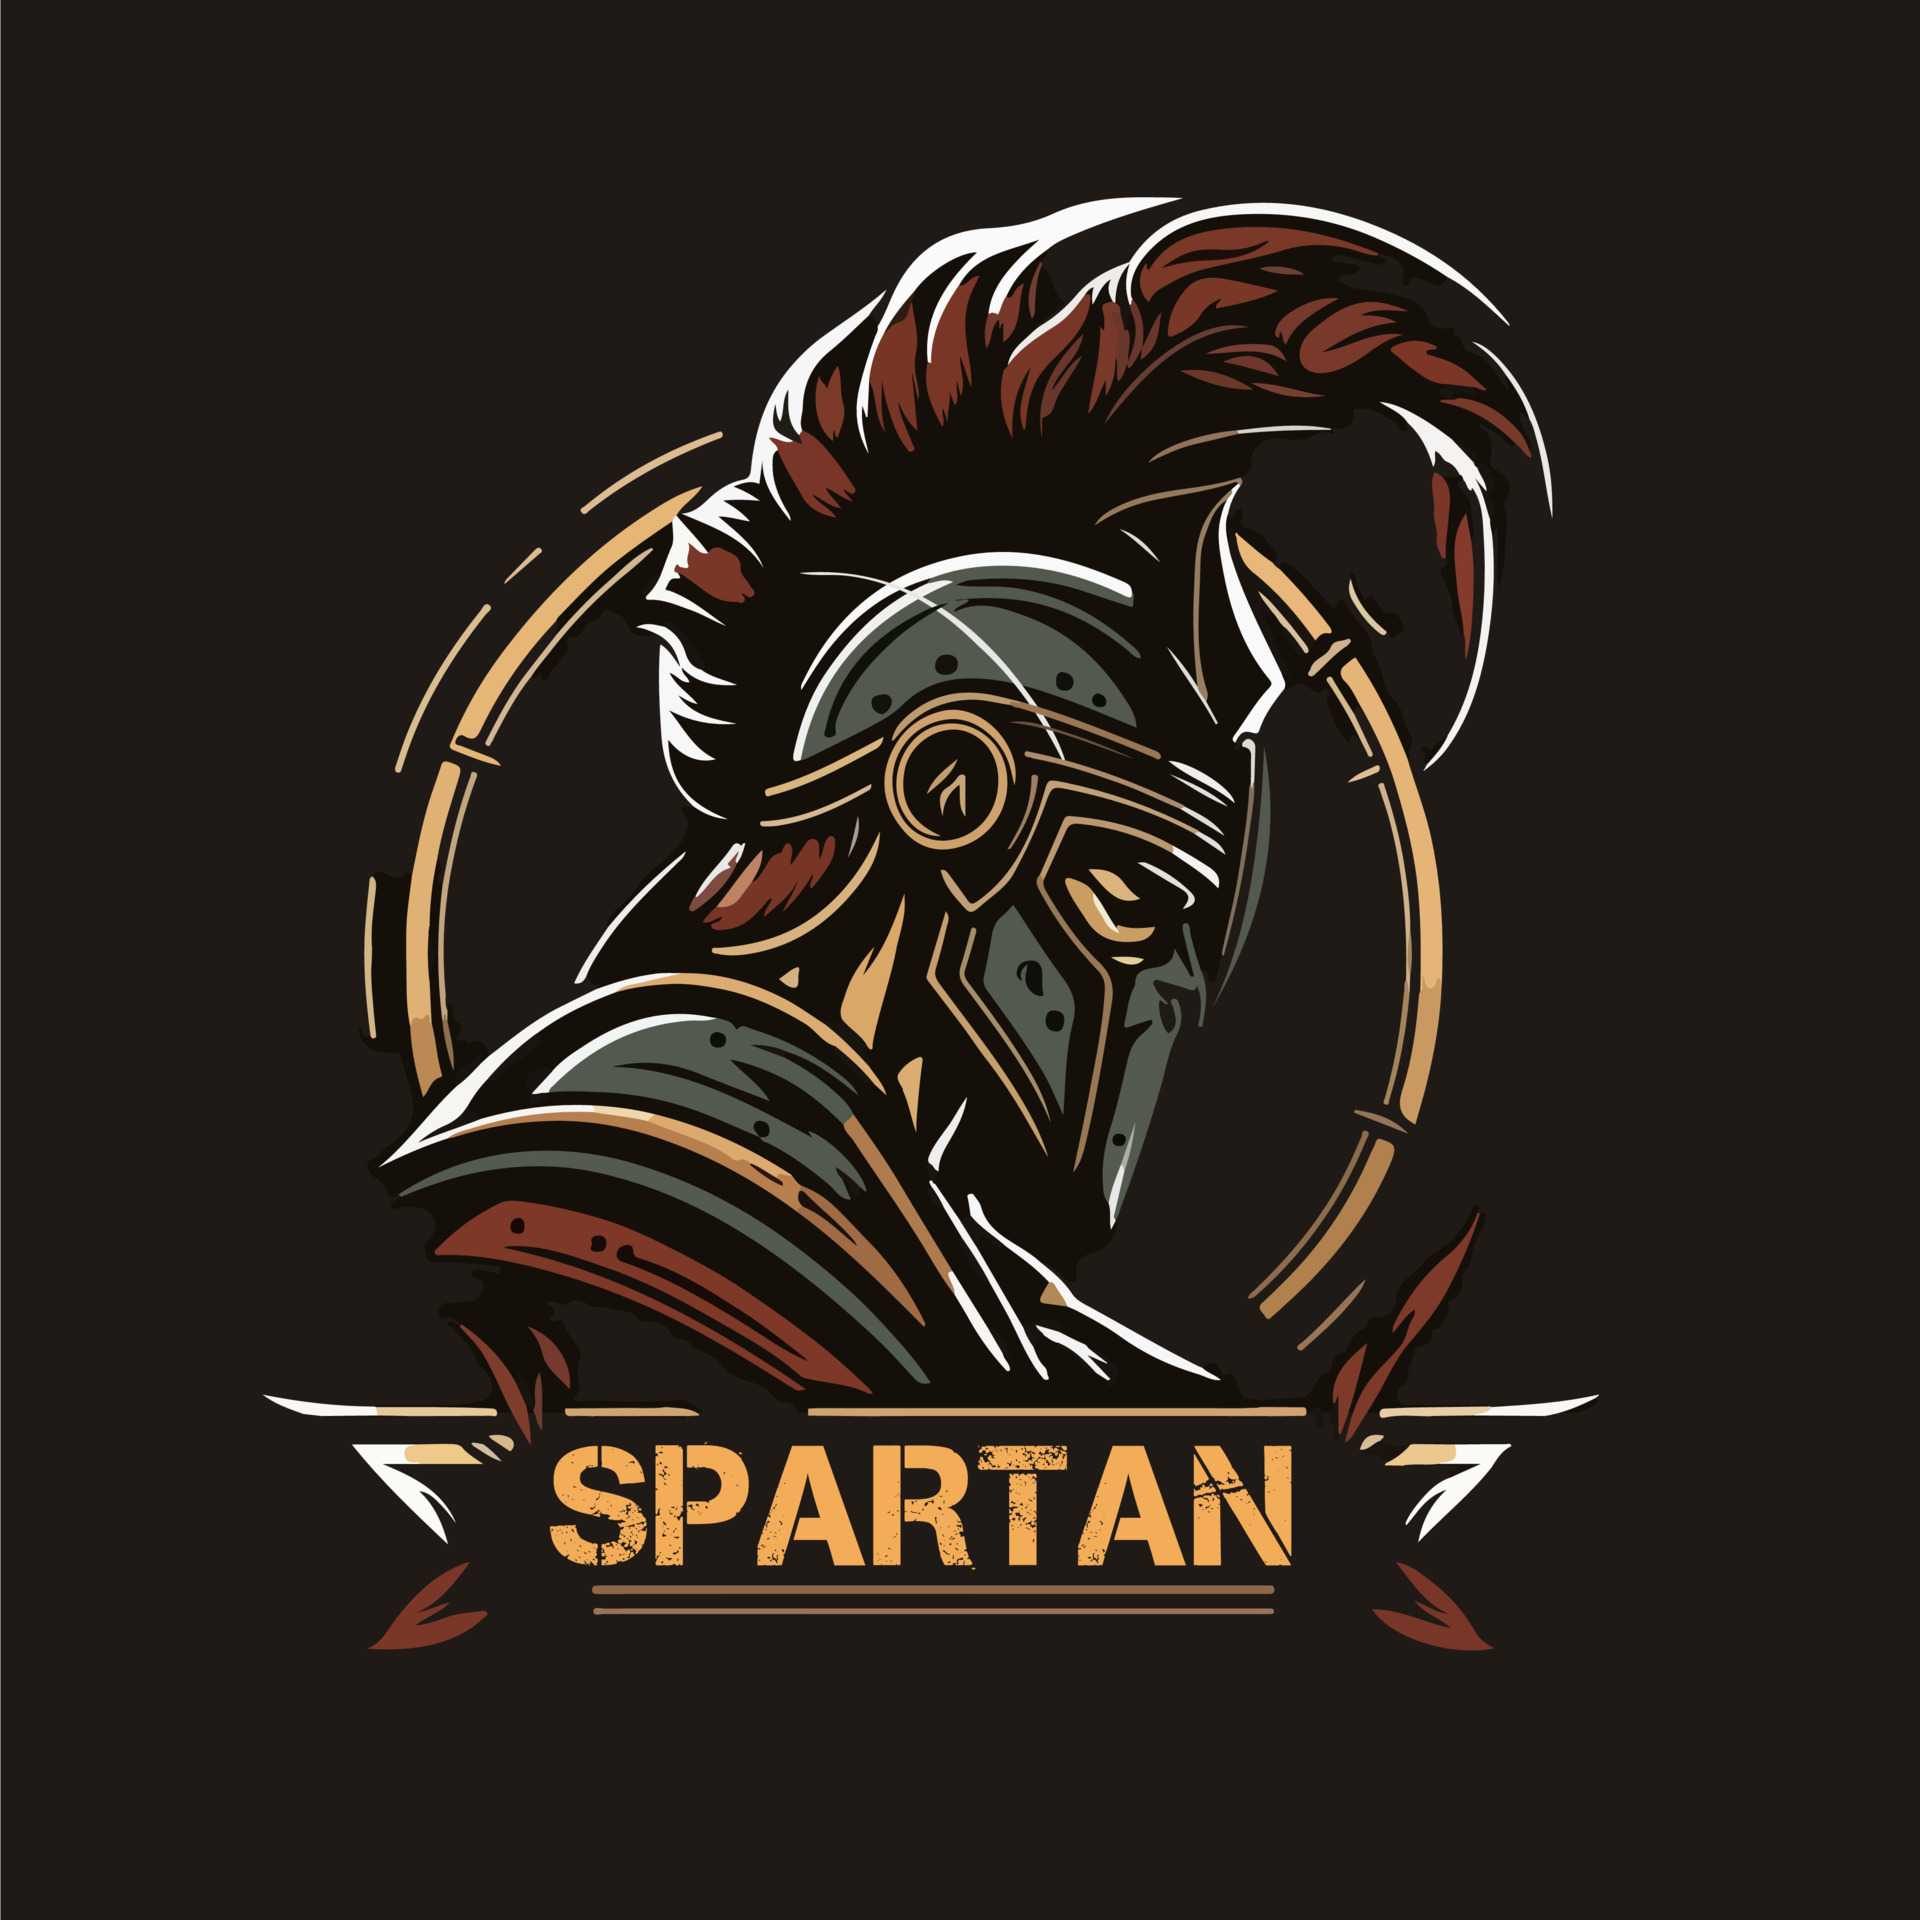 Spartan Strong Mascot logo Vector Illustration eps10 21083048 Vector ...